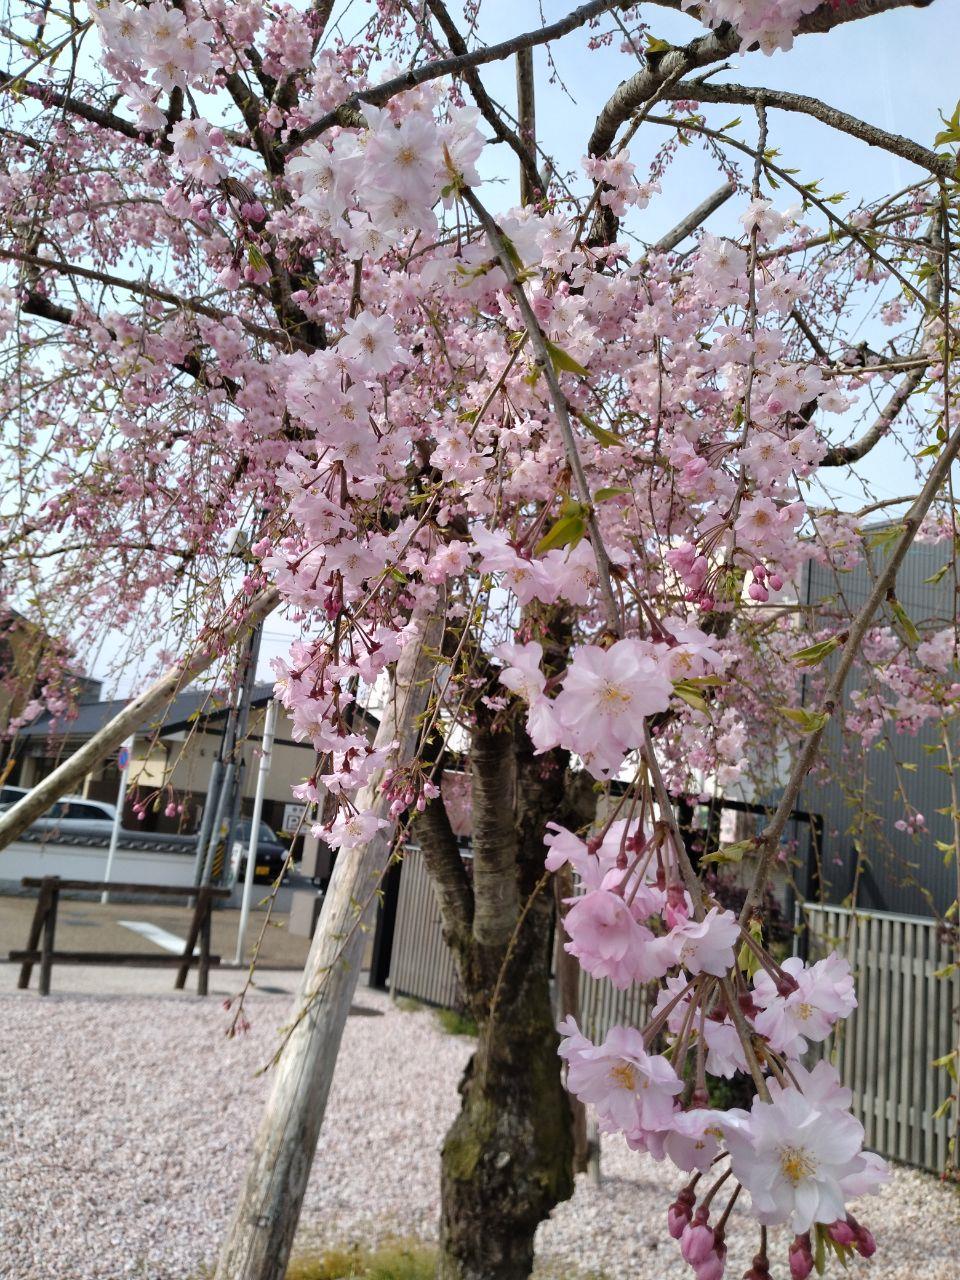 ピンク色の桜と散った桜が絨毯のようになっている写真